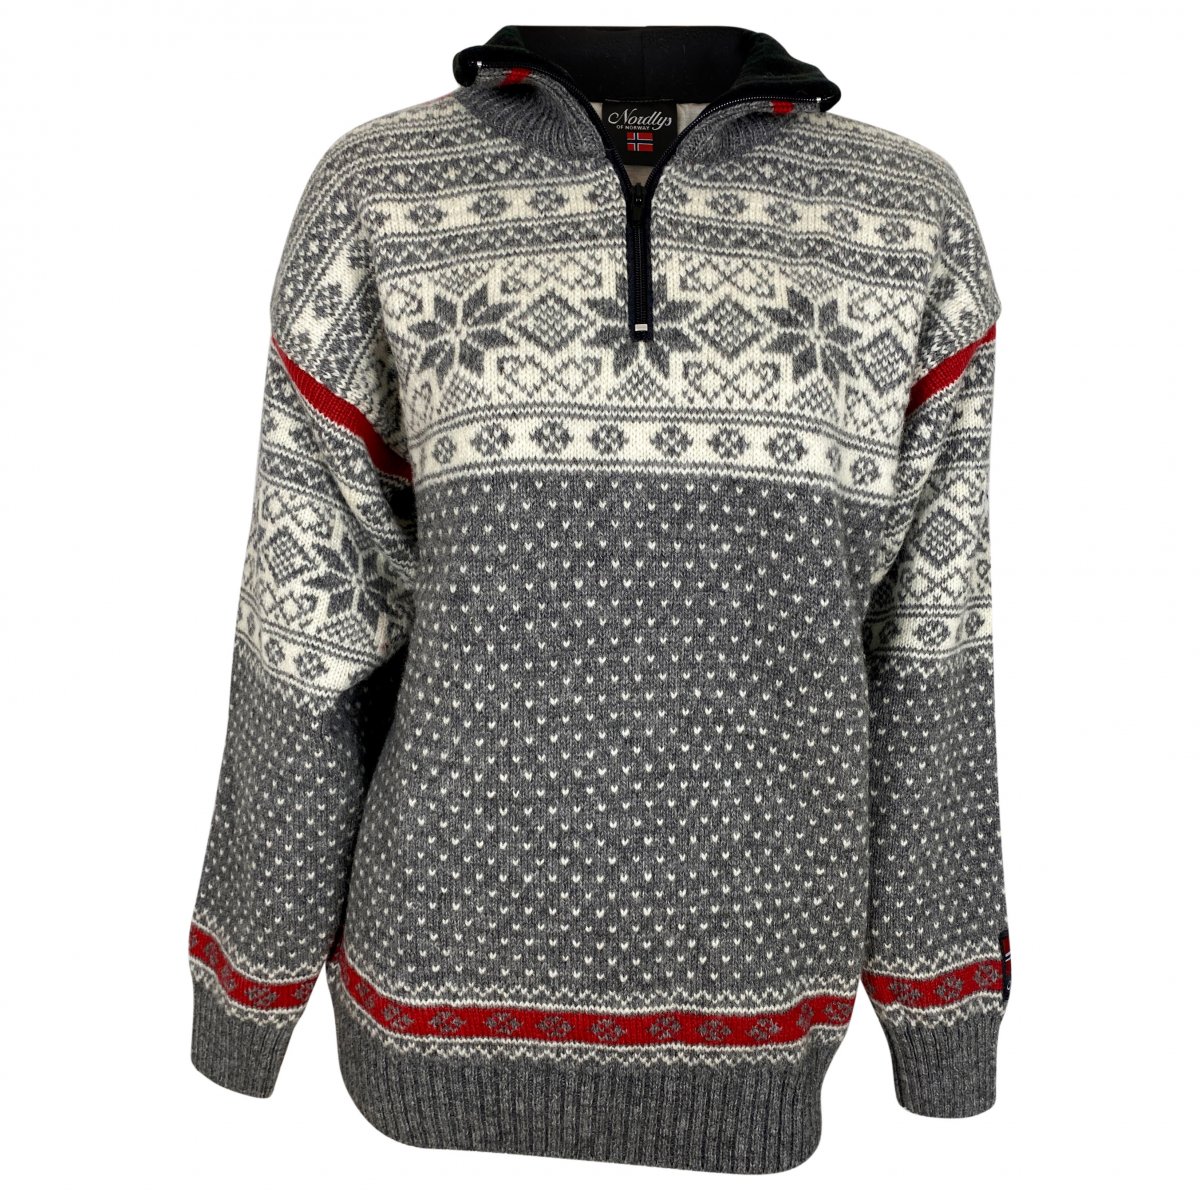 Mus dekorere sy Norsk strik sweater m. fleece i nakken, 100% Ren Ny Uld. TILBUD - Bluse /  strik / sweater / trøje - Samsø Nature